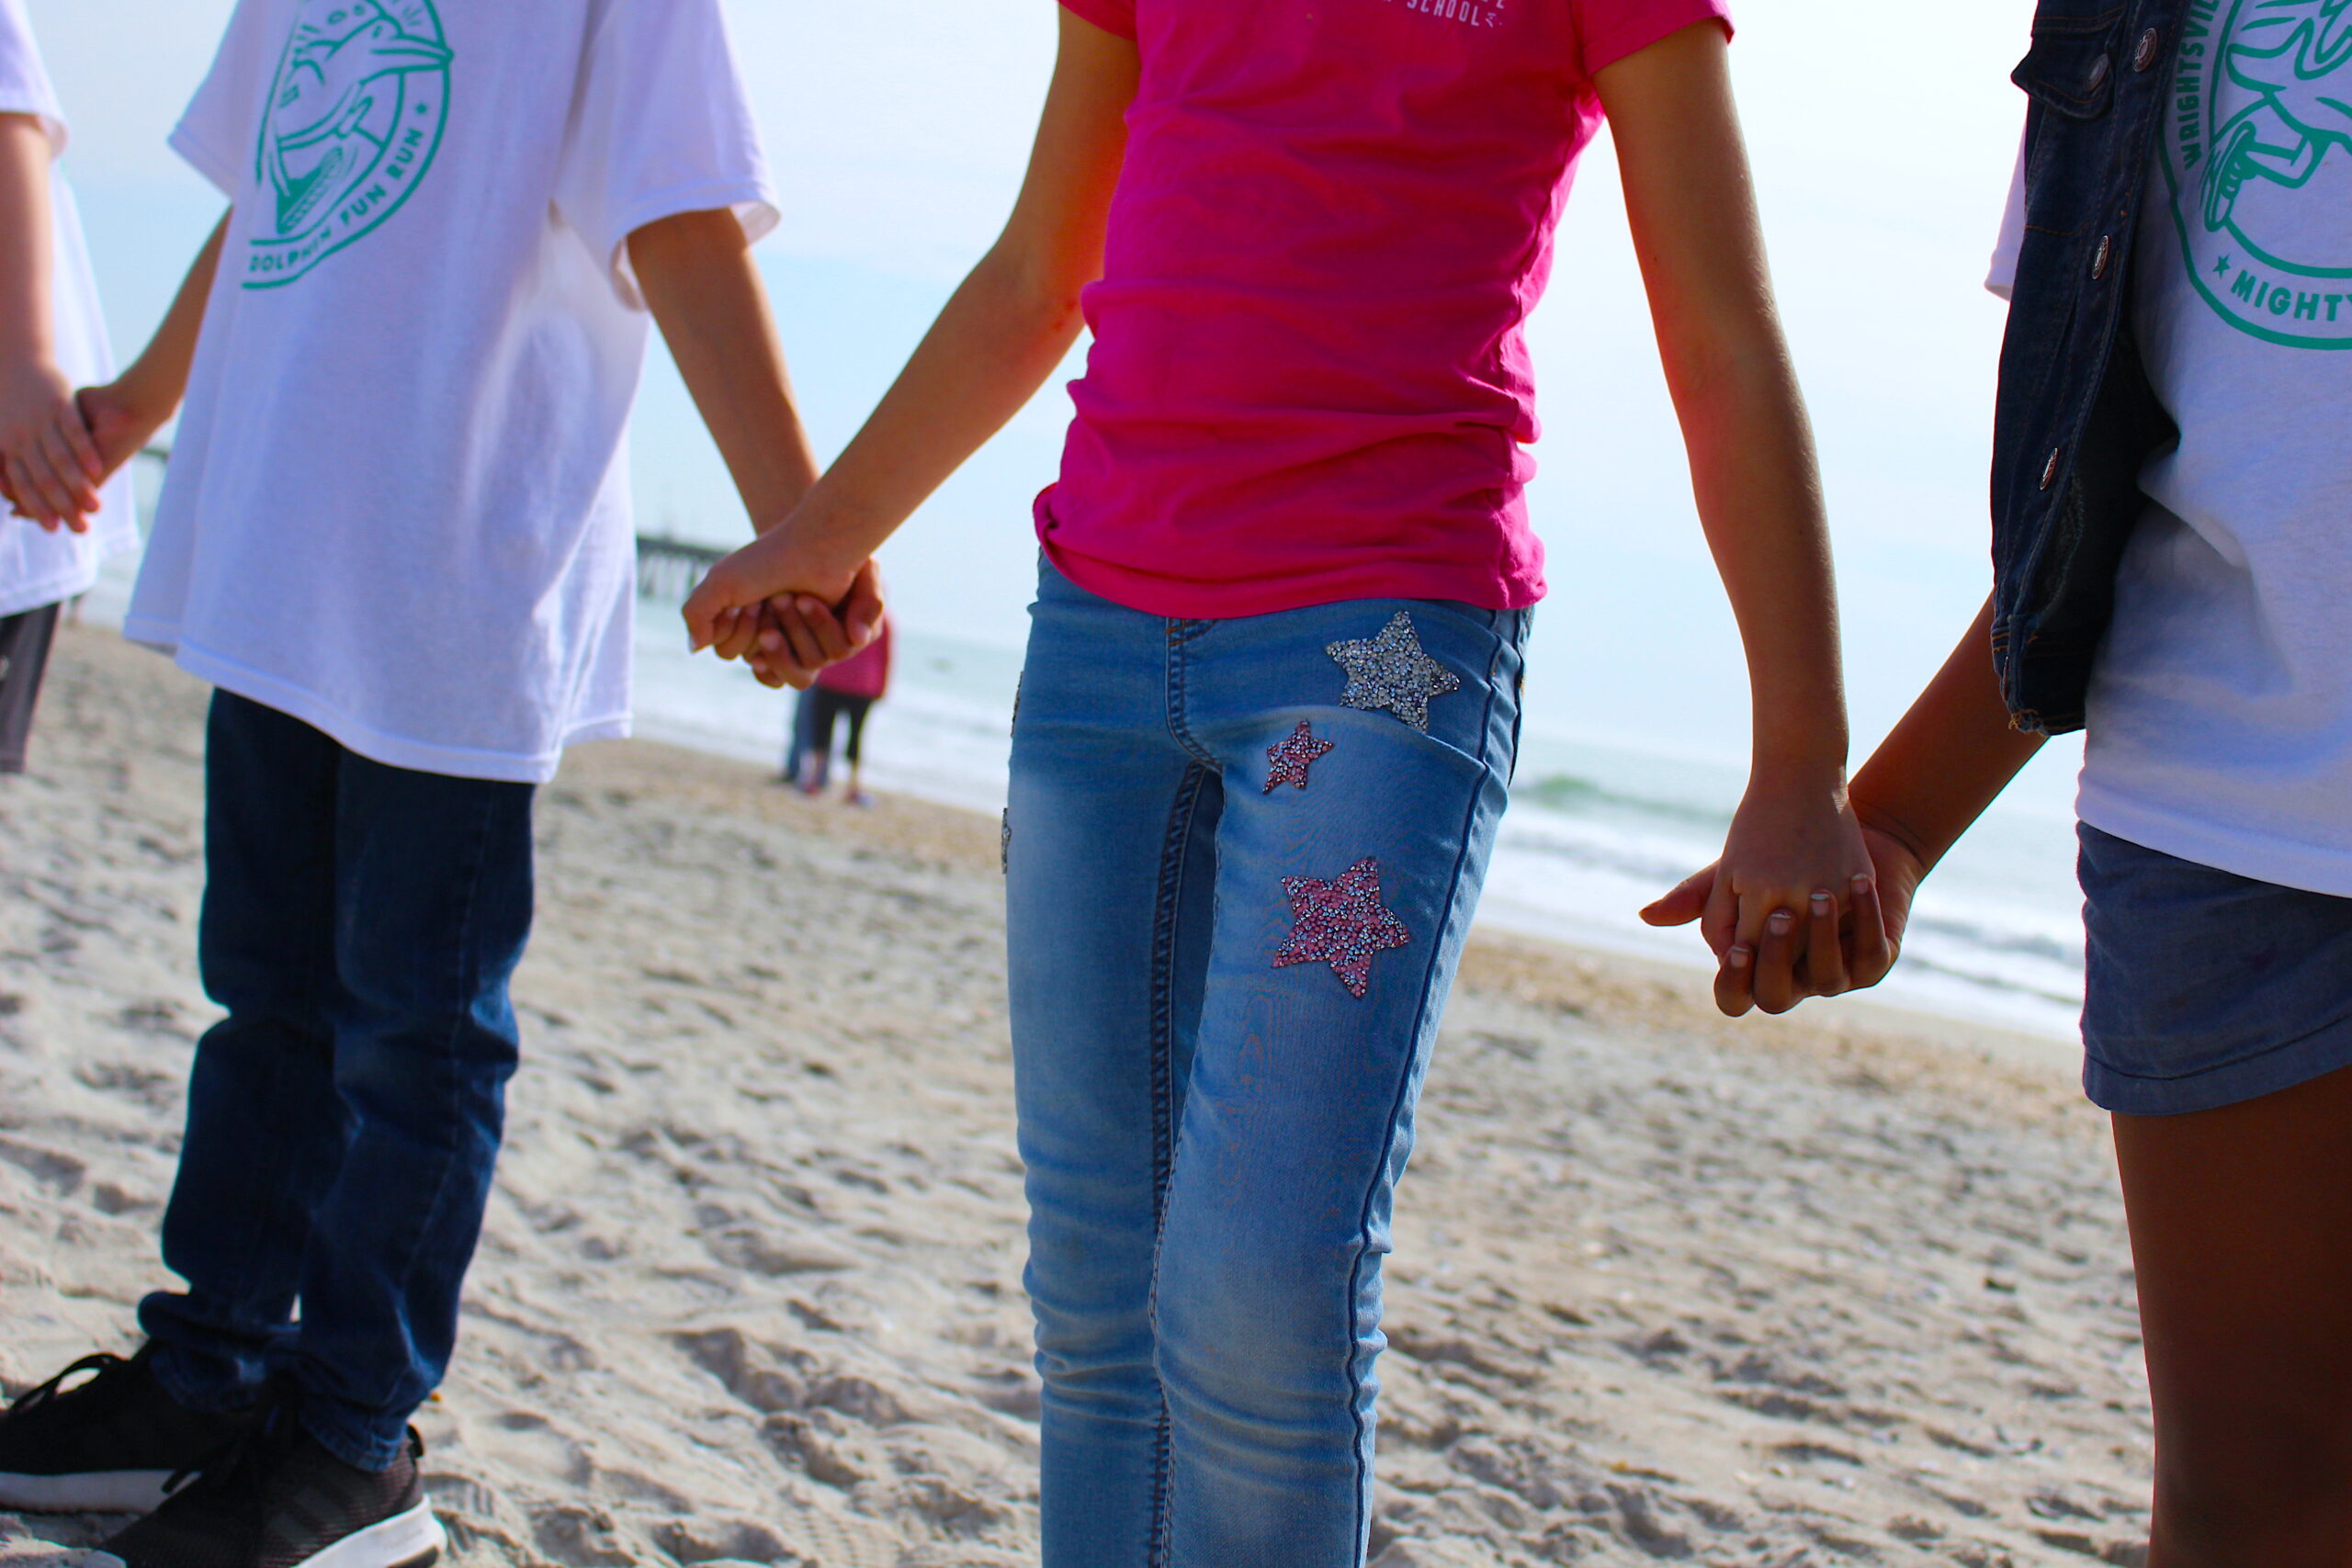 3 children holding hands on a beach.